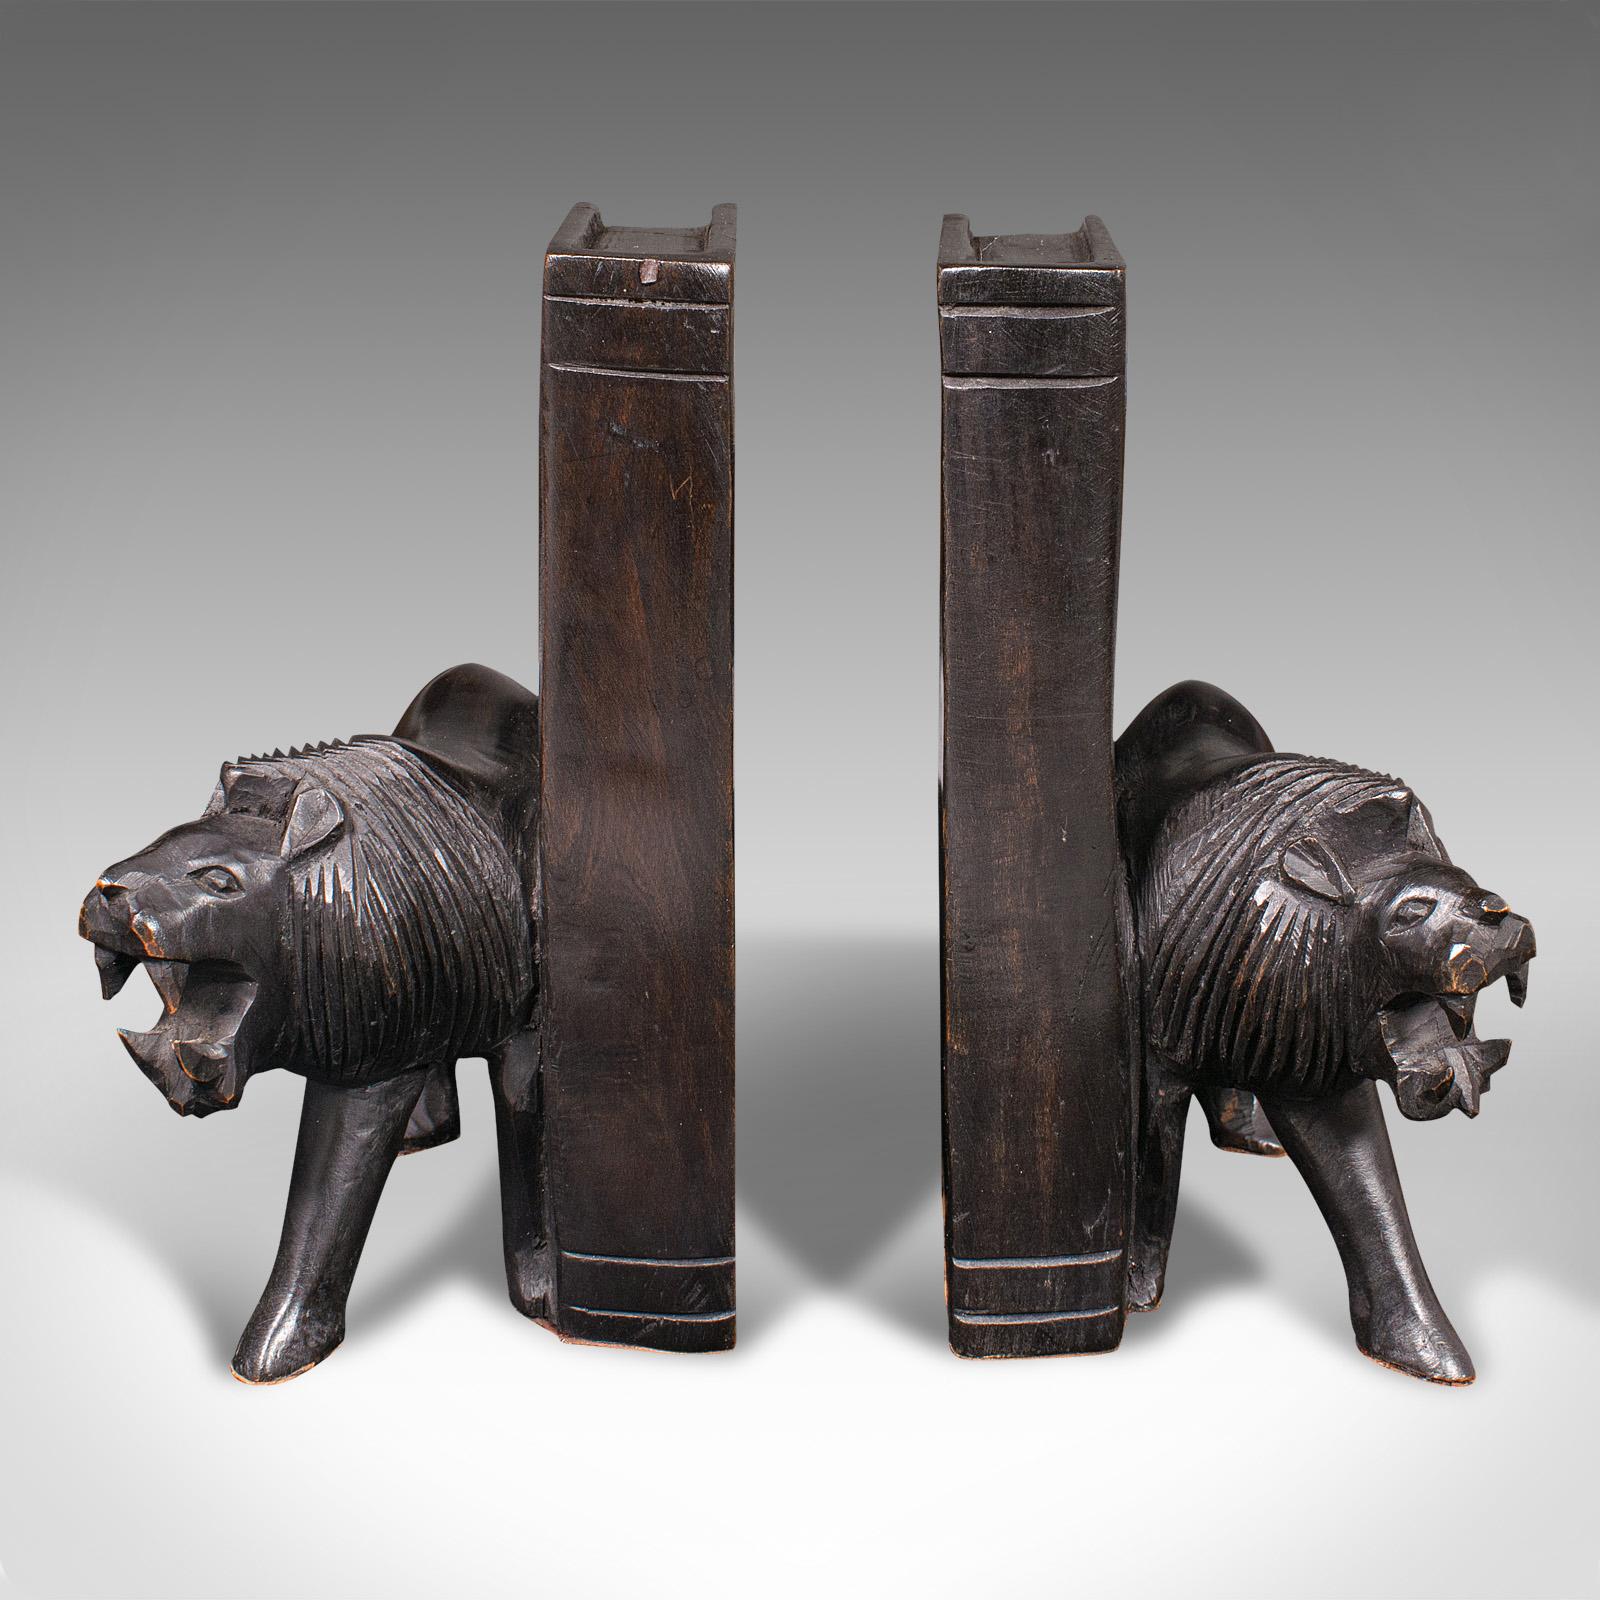 Notre stock # 18.9940

Il s'agit d'une paire de serre-livres anciens en forme de lion sculpté. Repose-livre oriental en bois de fer ébonisé à décor de figures animales, datant de la fin de la période victorienne, vers 1900.

Des formes de lions